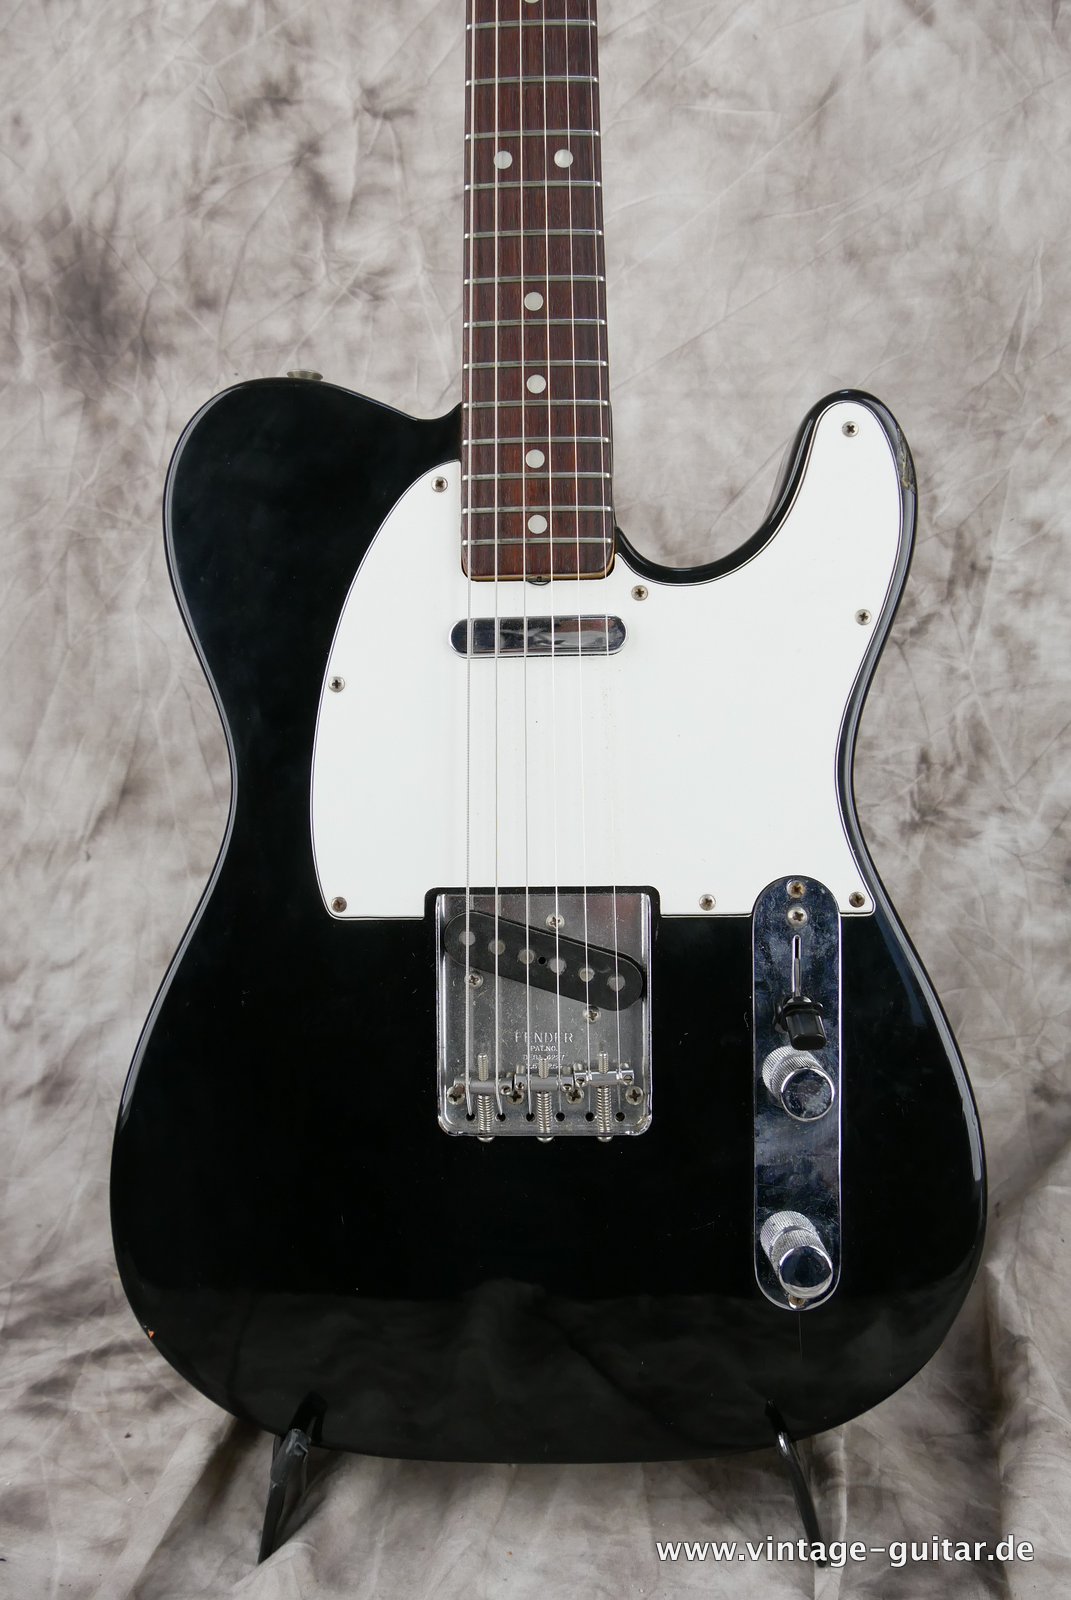 Fender-Telecaster-1972-black-over-sunburst-002.JPG